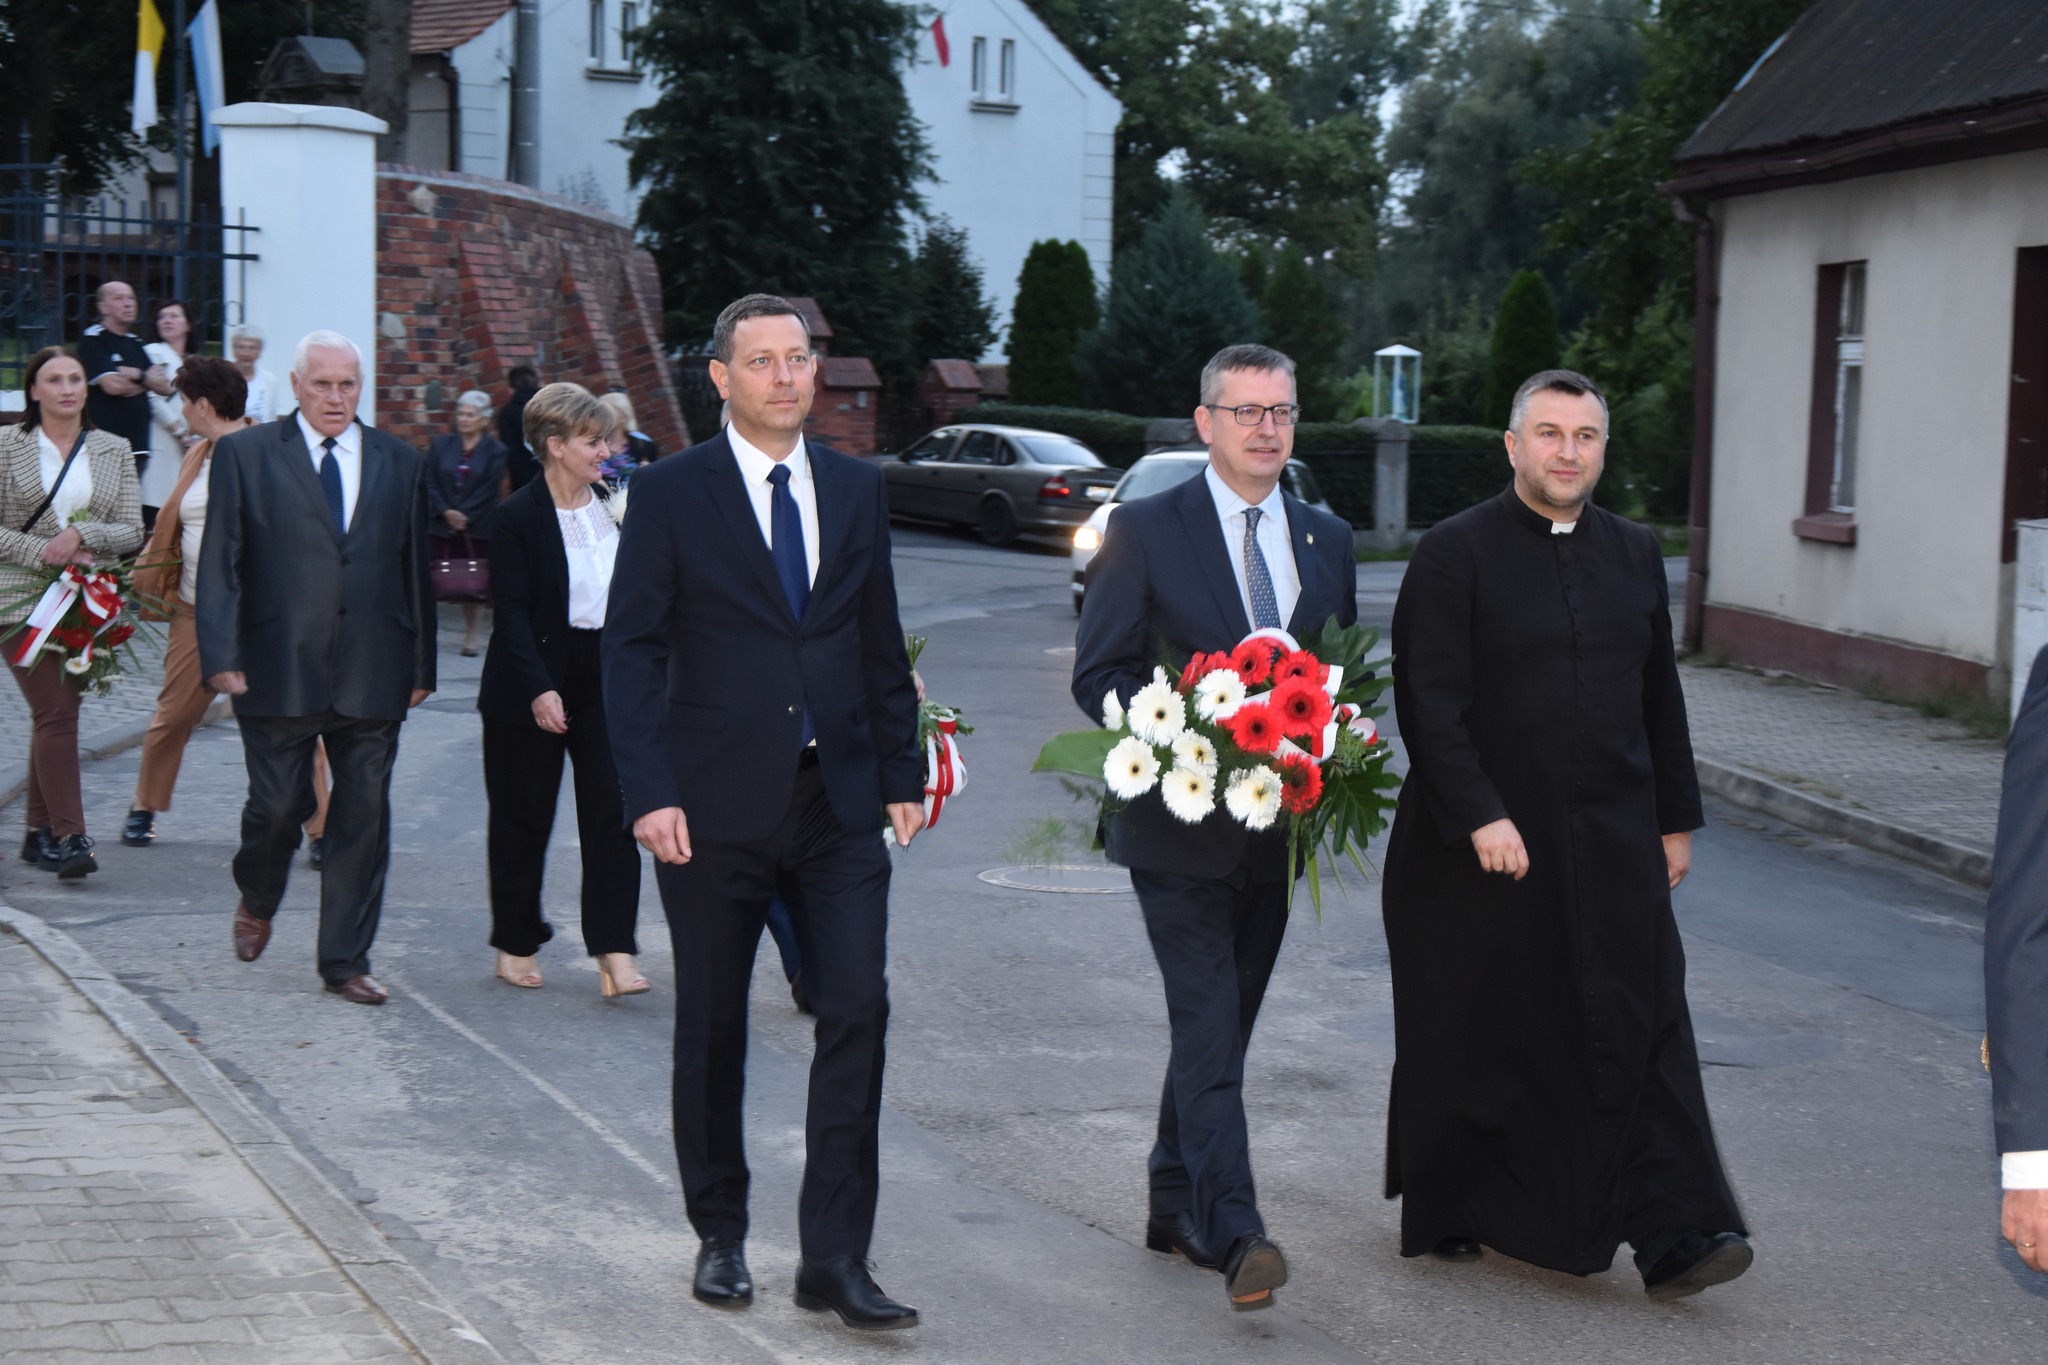 Na zdjęciu Członek Zarządu Powiatu Krotoszyńskiego, Burmistrz Zdun oraz ks. Krzysztof Śliczny w pochodzie